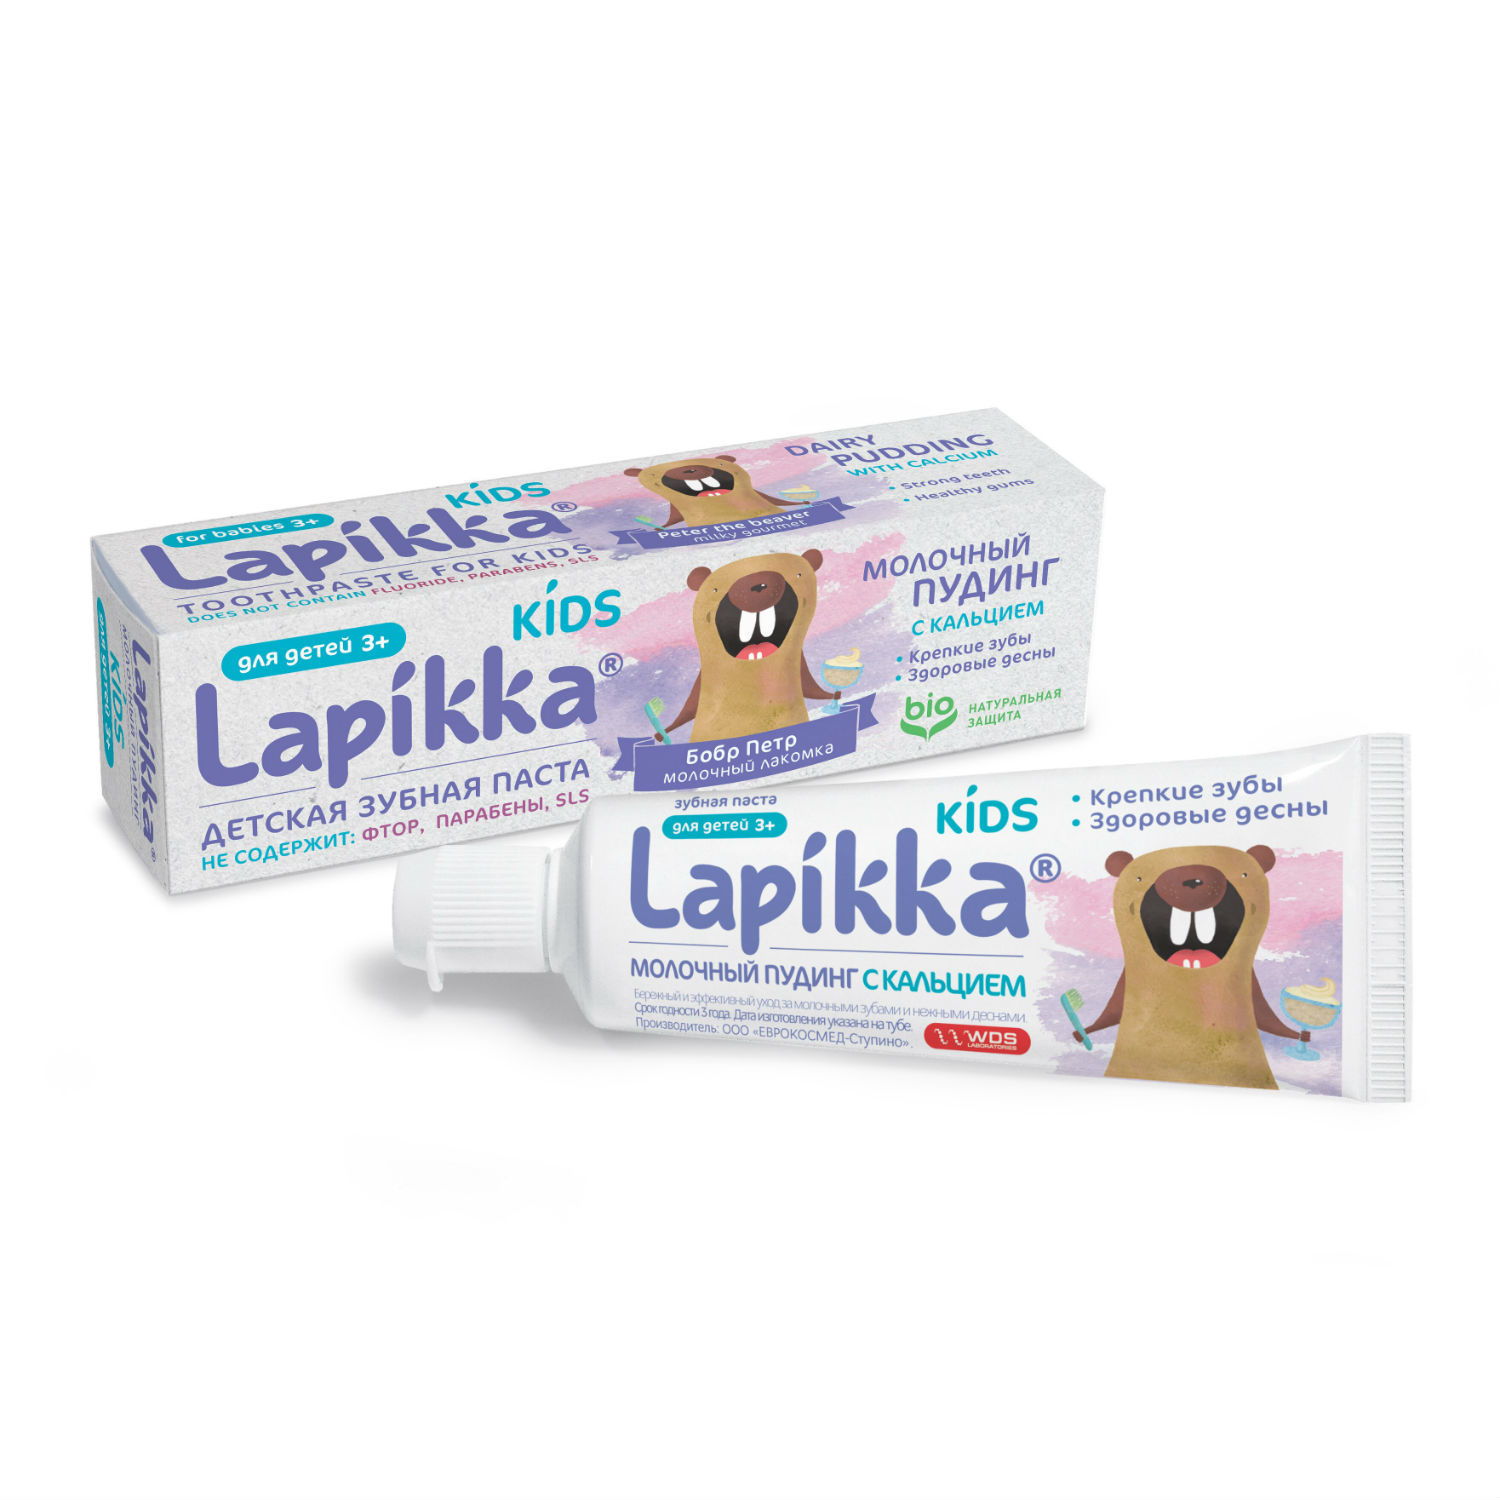 Зубная паста Lapikka Kids Молочный пудинг с кальцием 45 г(7 лет) - фото 1